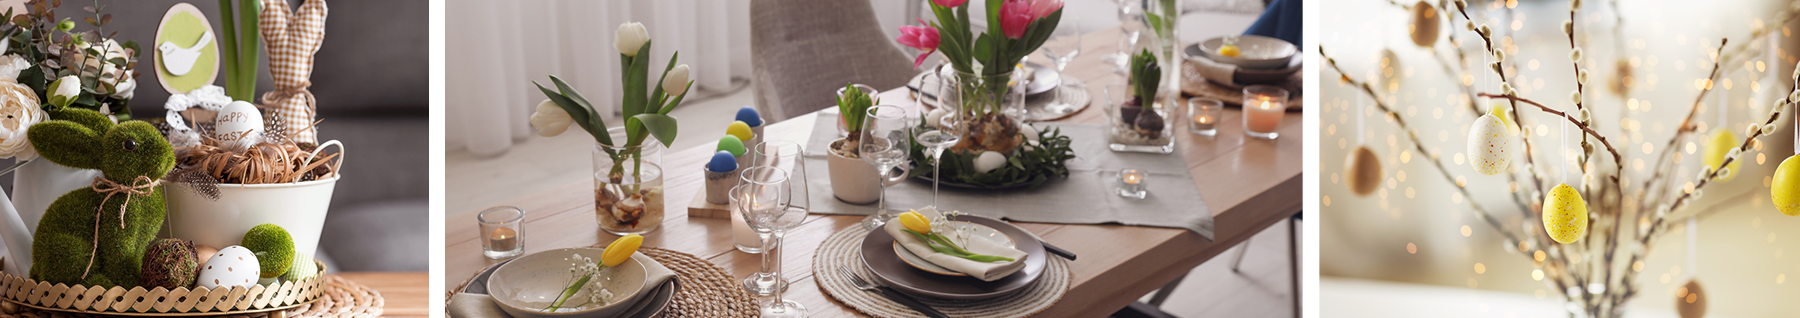 Une jolie déco de table pour Pâques avec des oeufs et des lapins